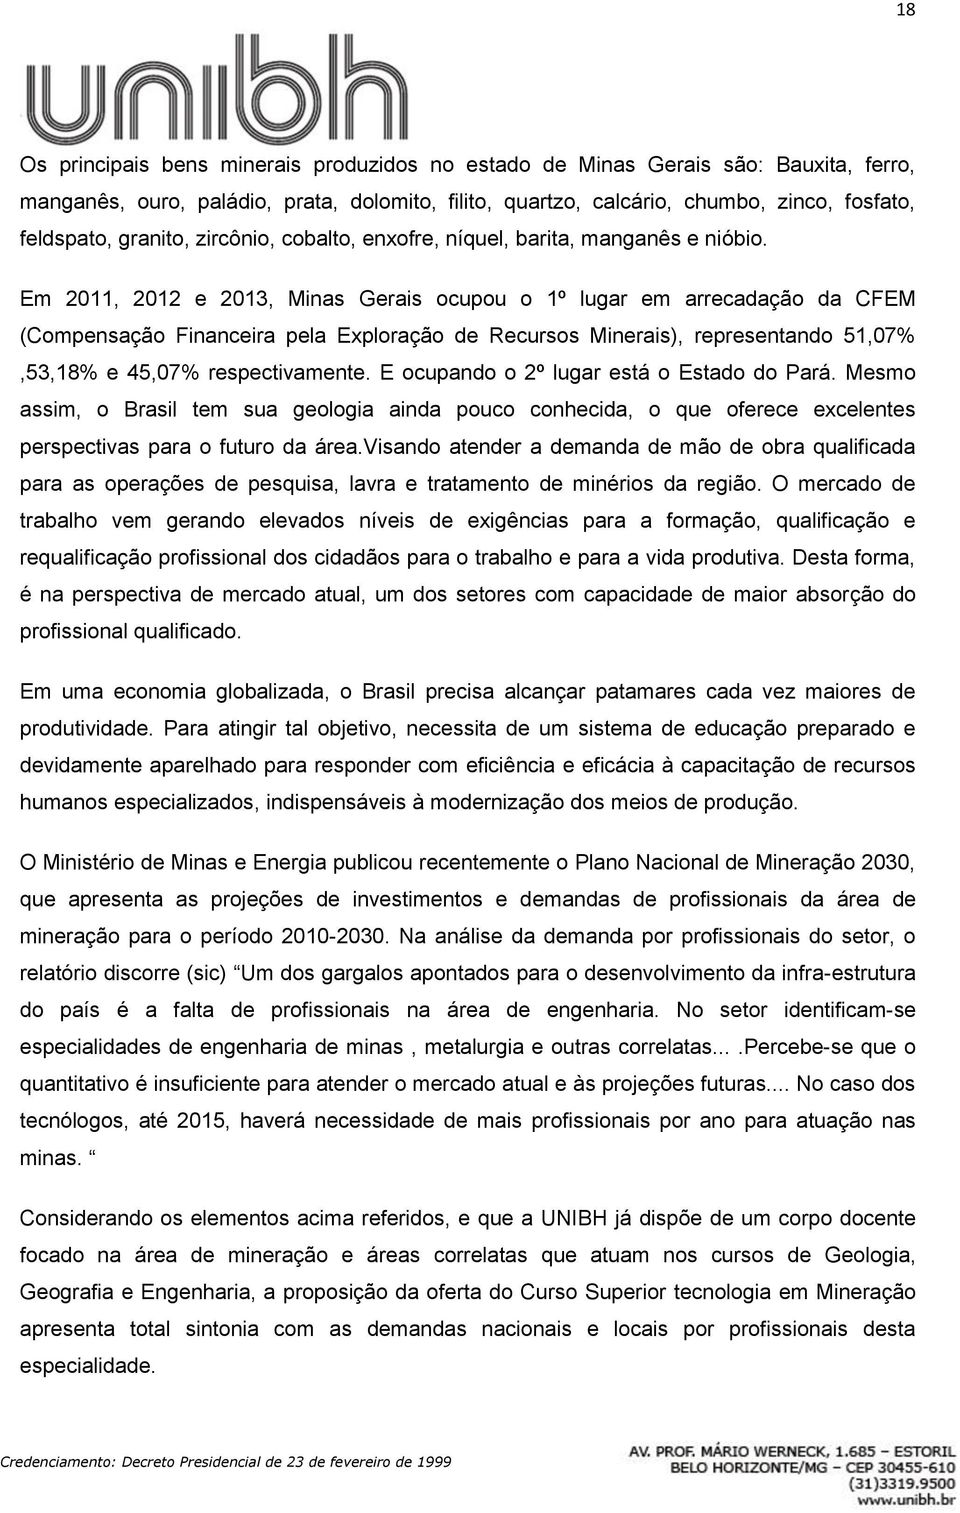 Em 2011, 2012 e 2013, Minas Gerais ocupou o 1º lugar em arrecadação da CFEM (Compensação Financeira pela Exploração de Recursos Minerais), representando 51,07%,53,18% e 45,07% respectivamente.